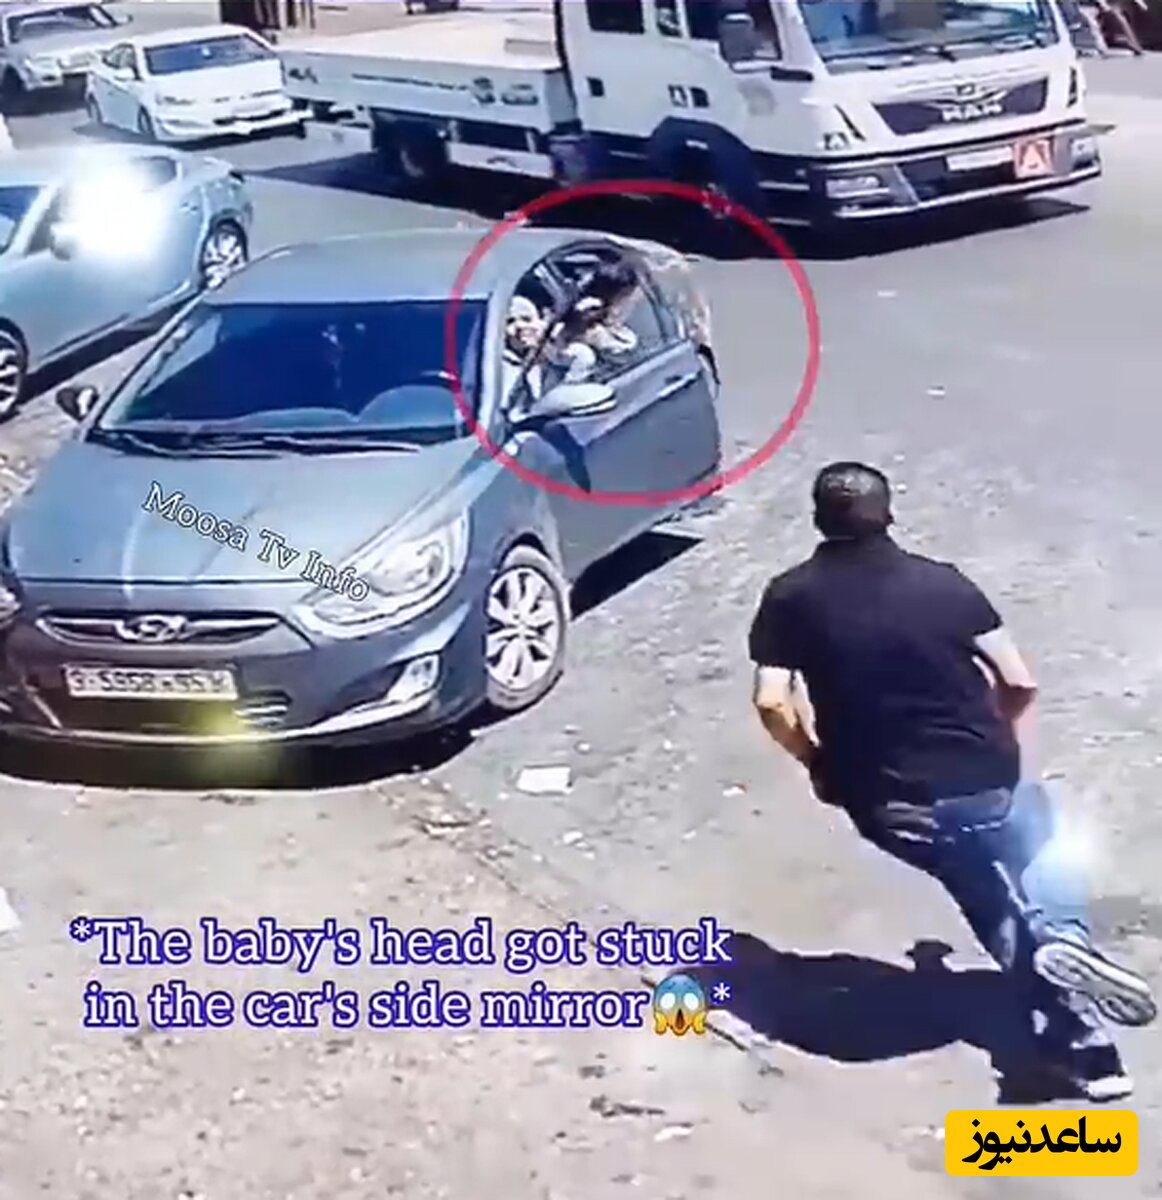 (فیلم) لحظه هولناک گیر کردن سر بچه در پنجره خودرو / خدا به دادشون رسید که بچه زنده موند ...